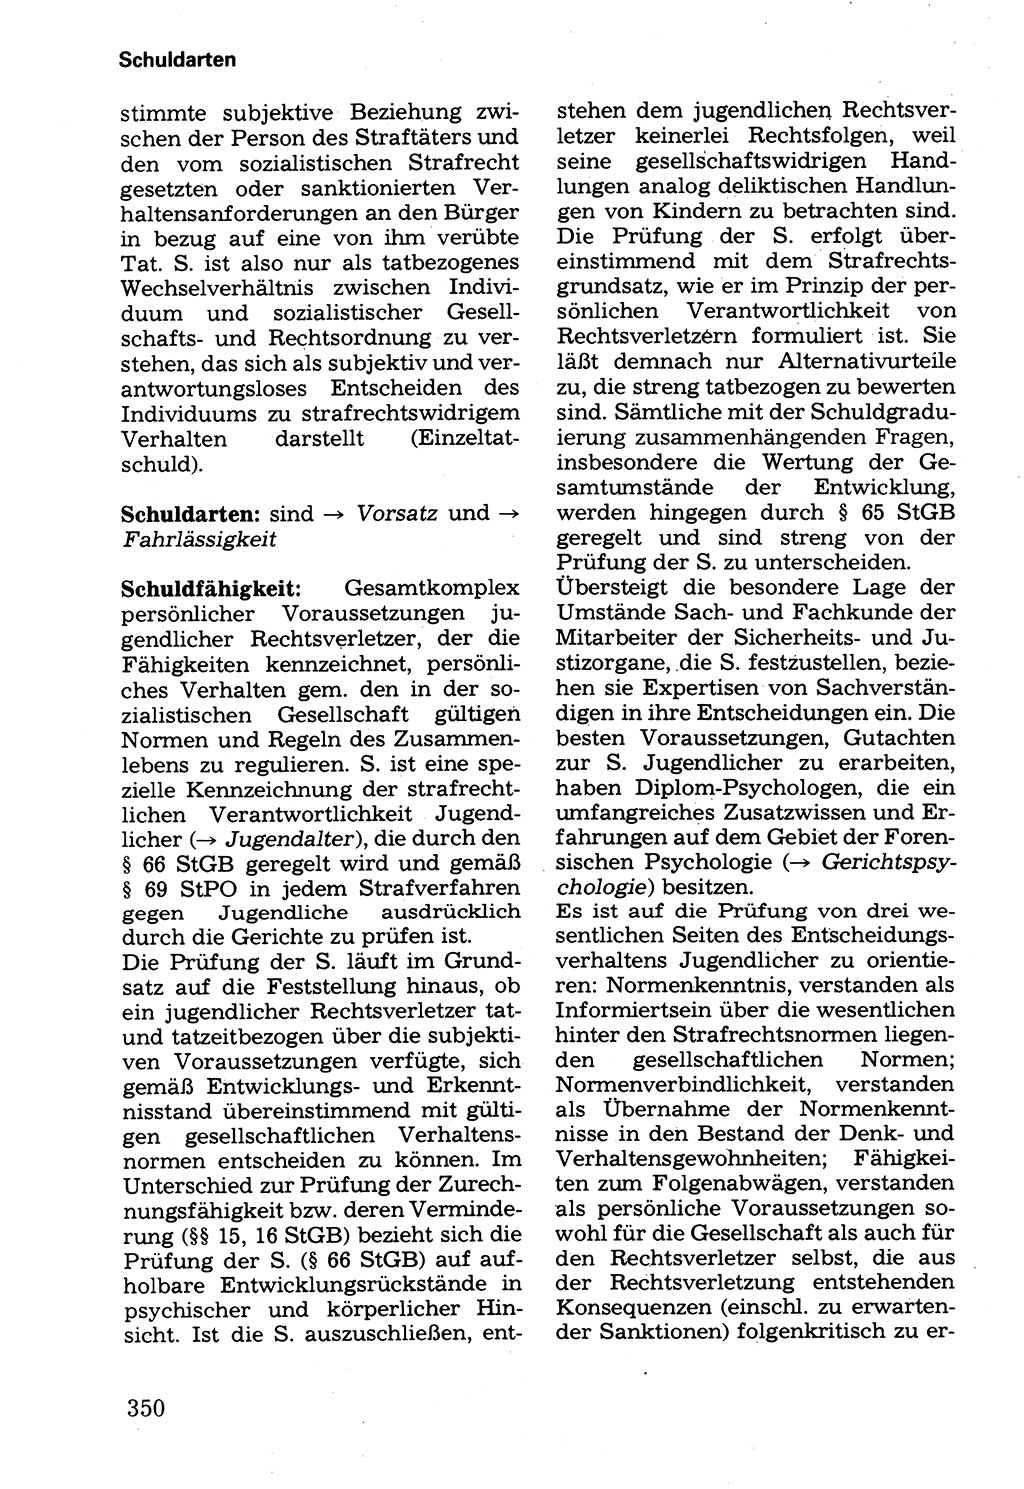 Wörterbuch der sozialistischen Kriminalistik [Deutsche Demokratische Republik (DDR)] 1981, Seite 350 (Wb. soz. Krim. DDR 1981, S. 350)